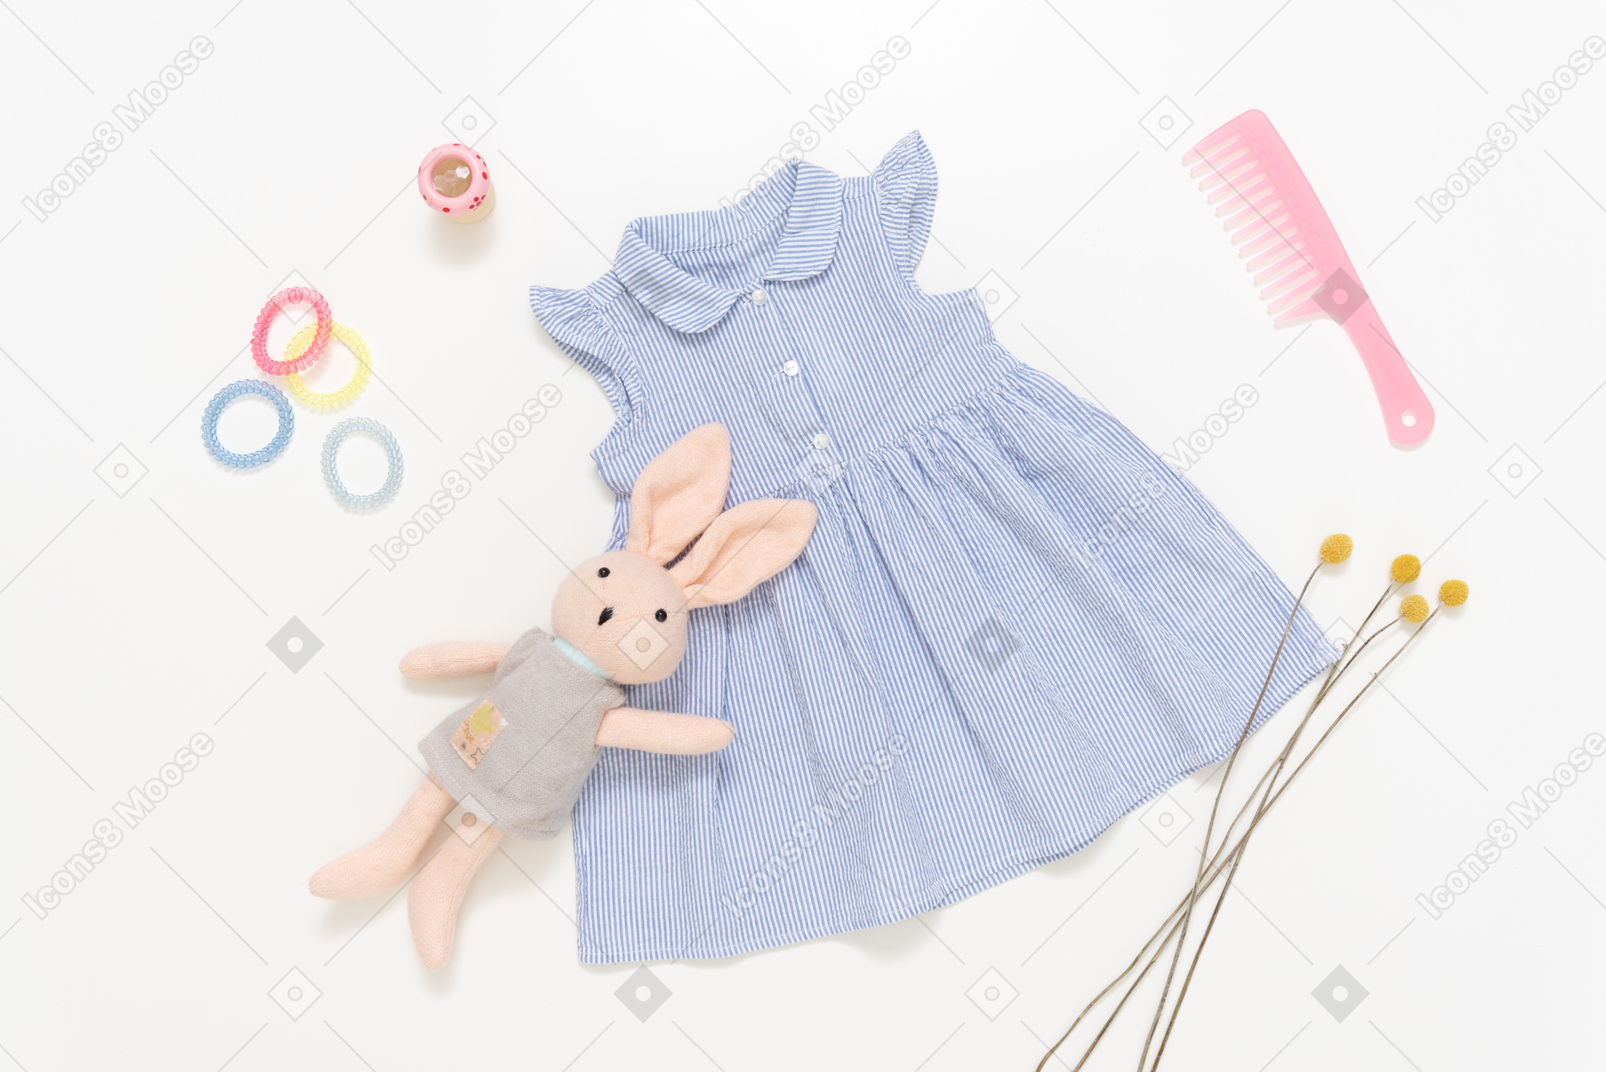 Blaues kleid des kindermädchens, angefülltes spielzeug, rosafarbene plastikhaarbürste und zusätze